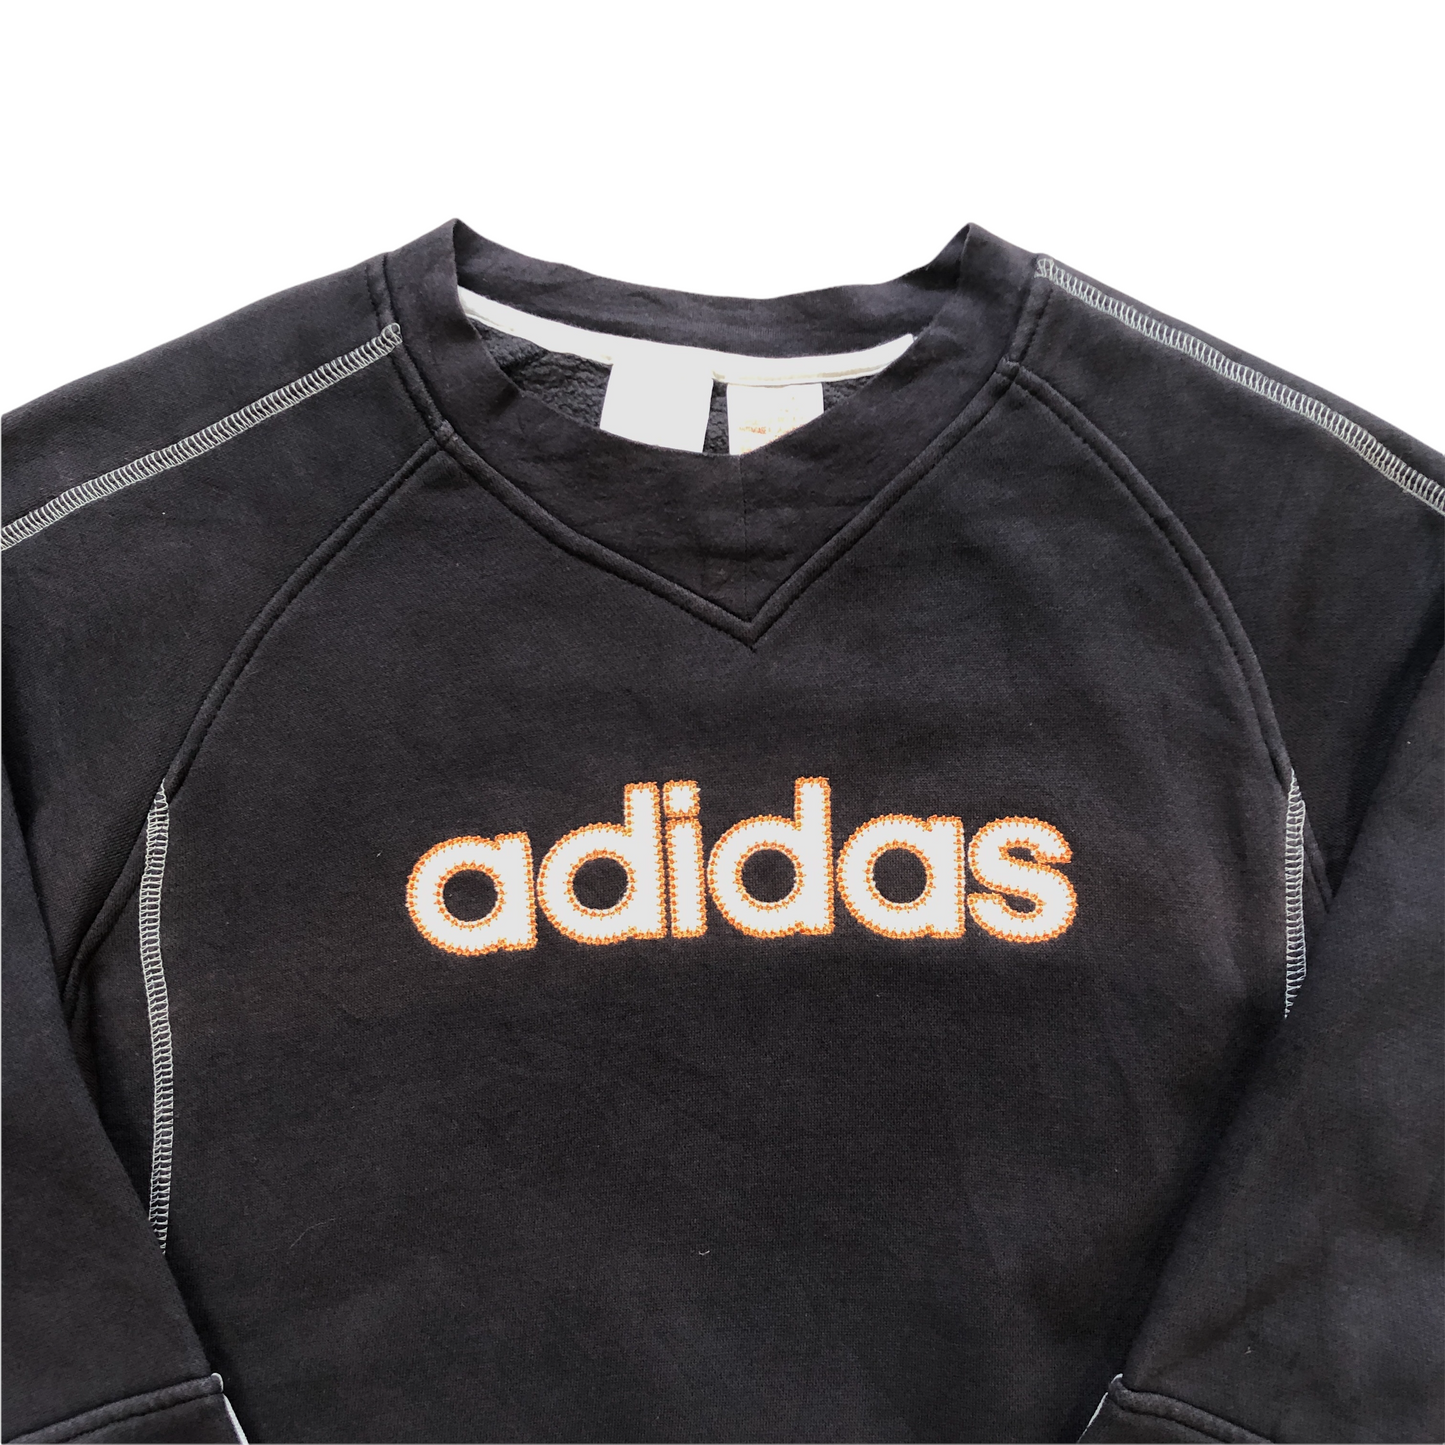 Vintage Adidas Sweatshirt (Age 12)